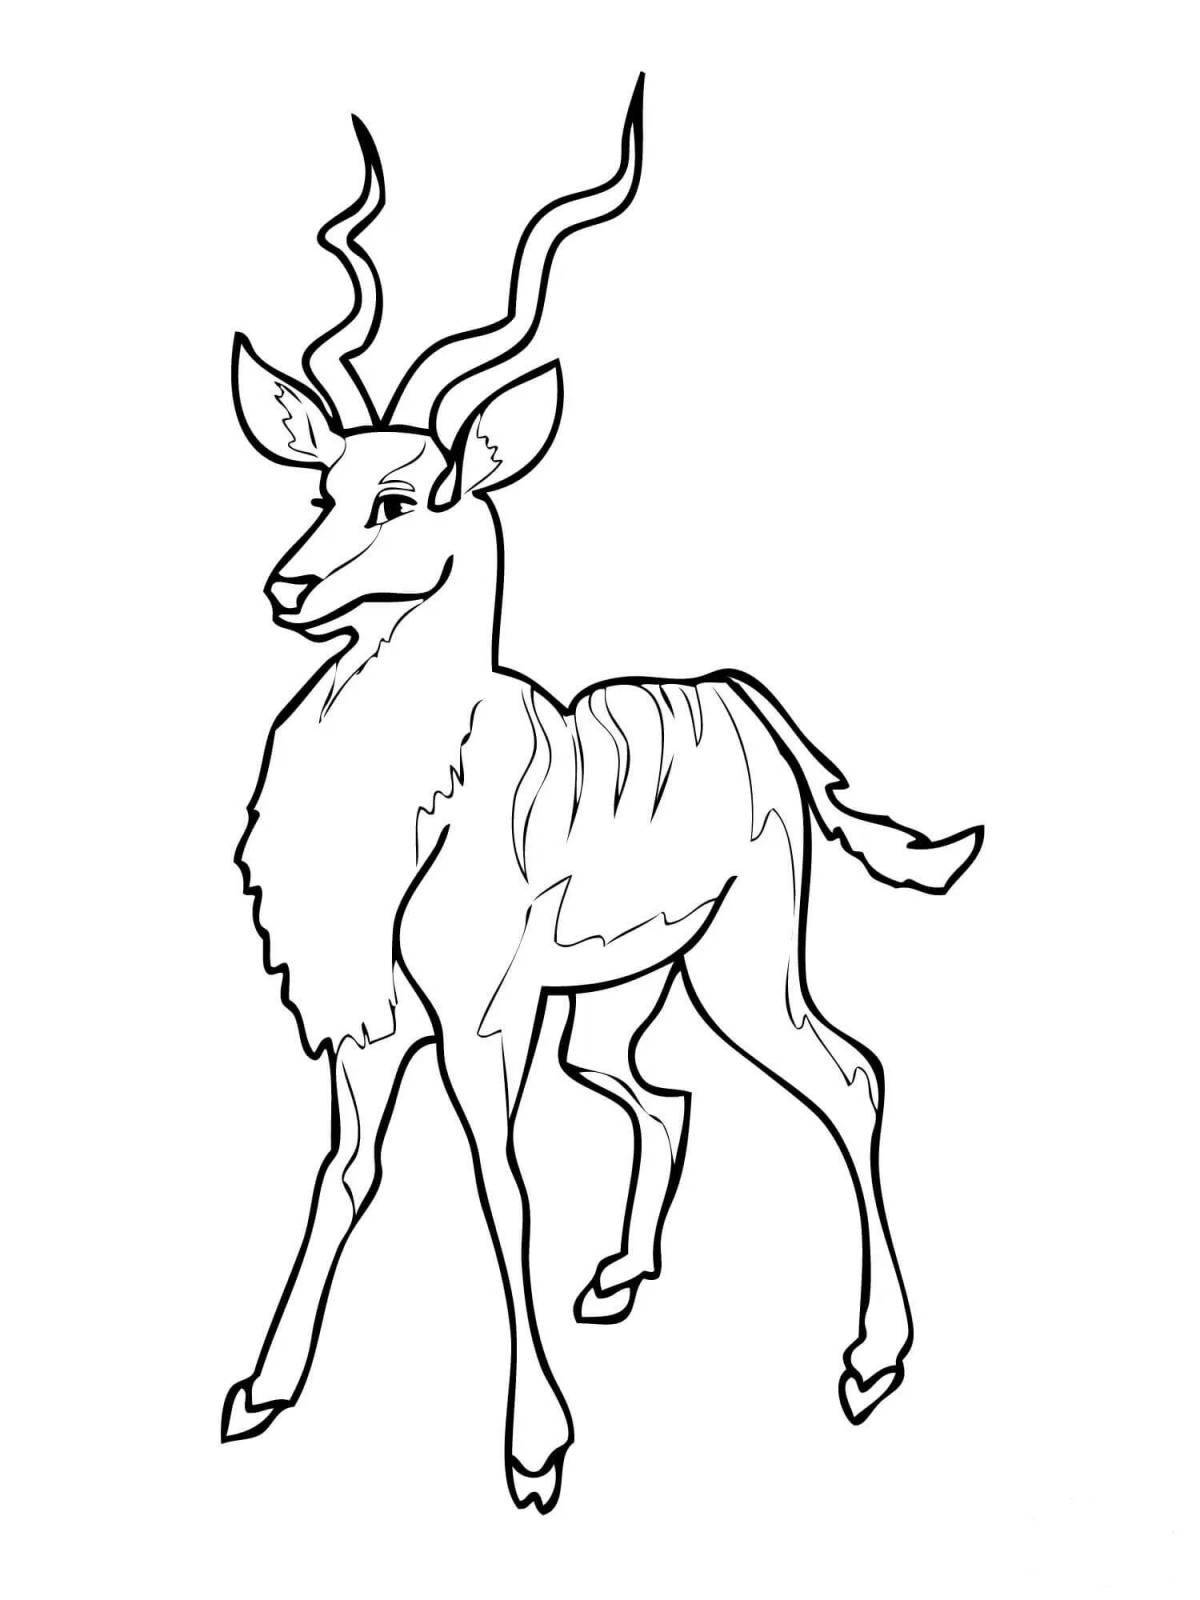 Cute antelope coloring book for kids